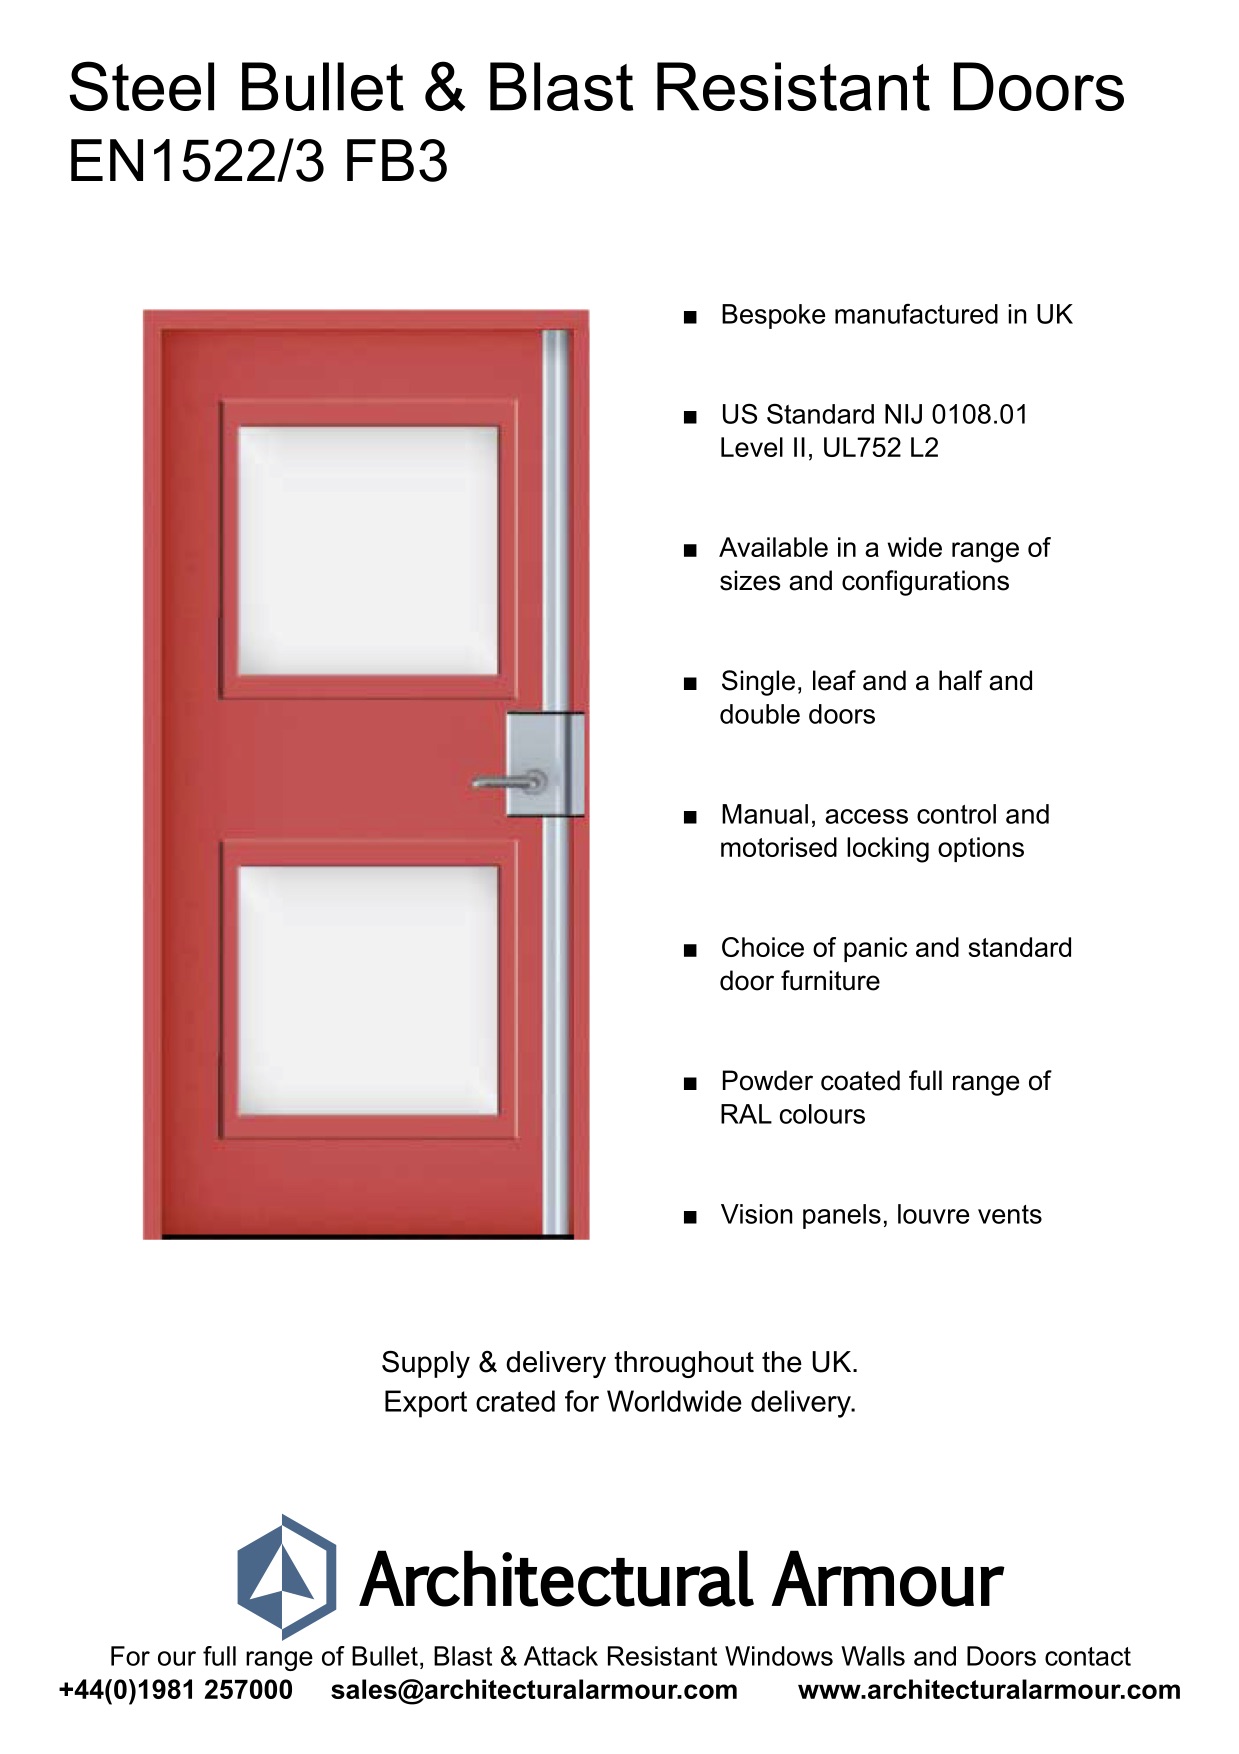 Bullet-and-Blast-Resistant-Steel-Doors-Vision-Panel-EN1522-3-FB3-BR3-UK